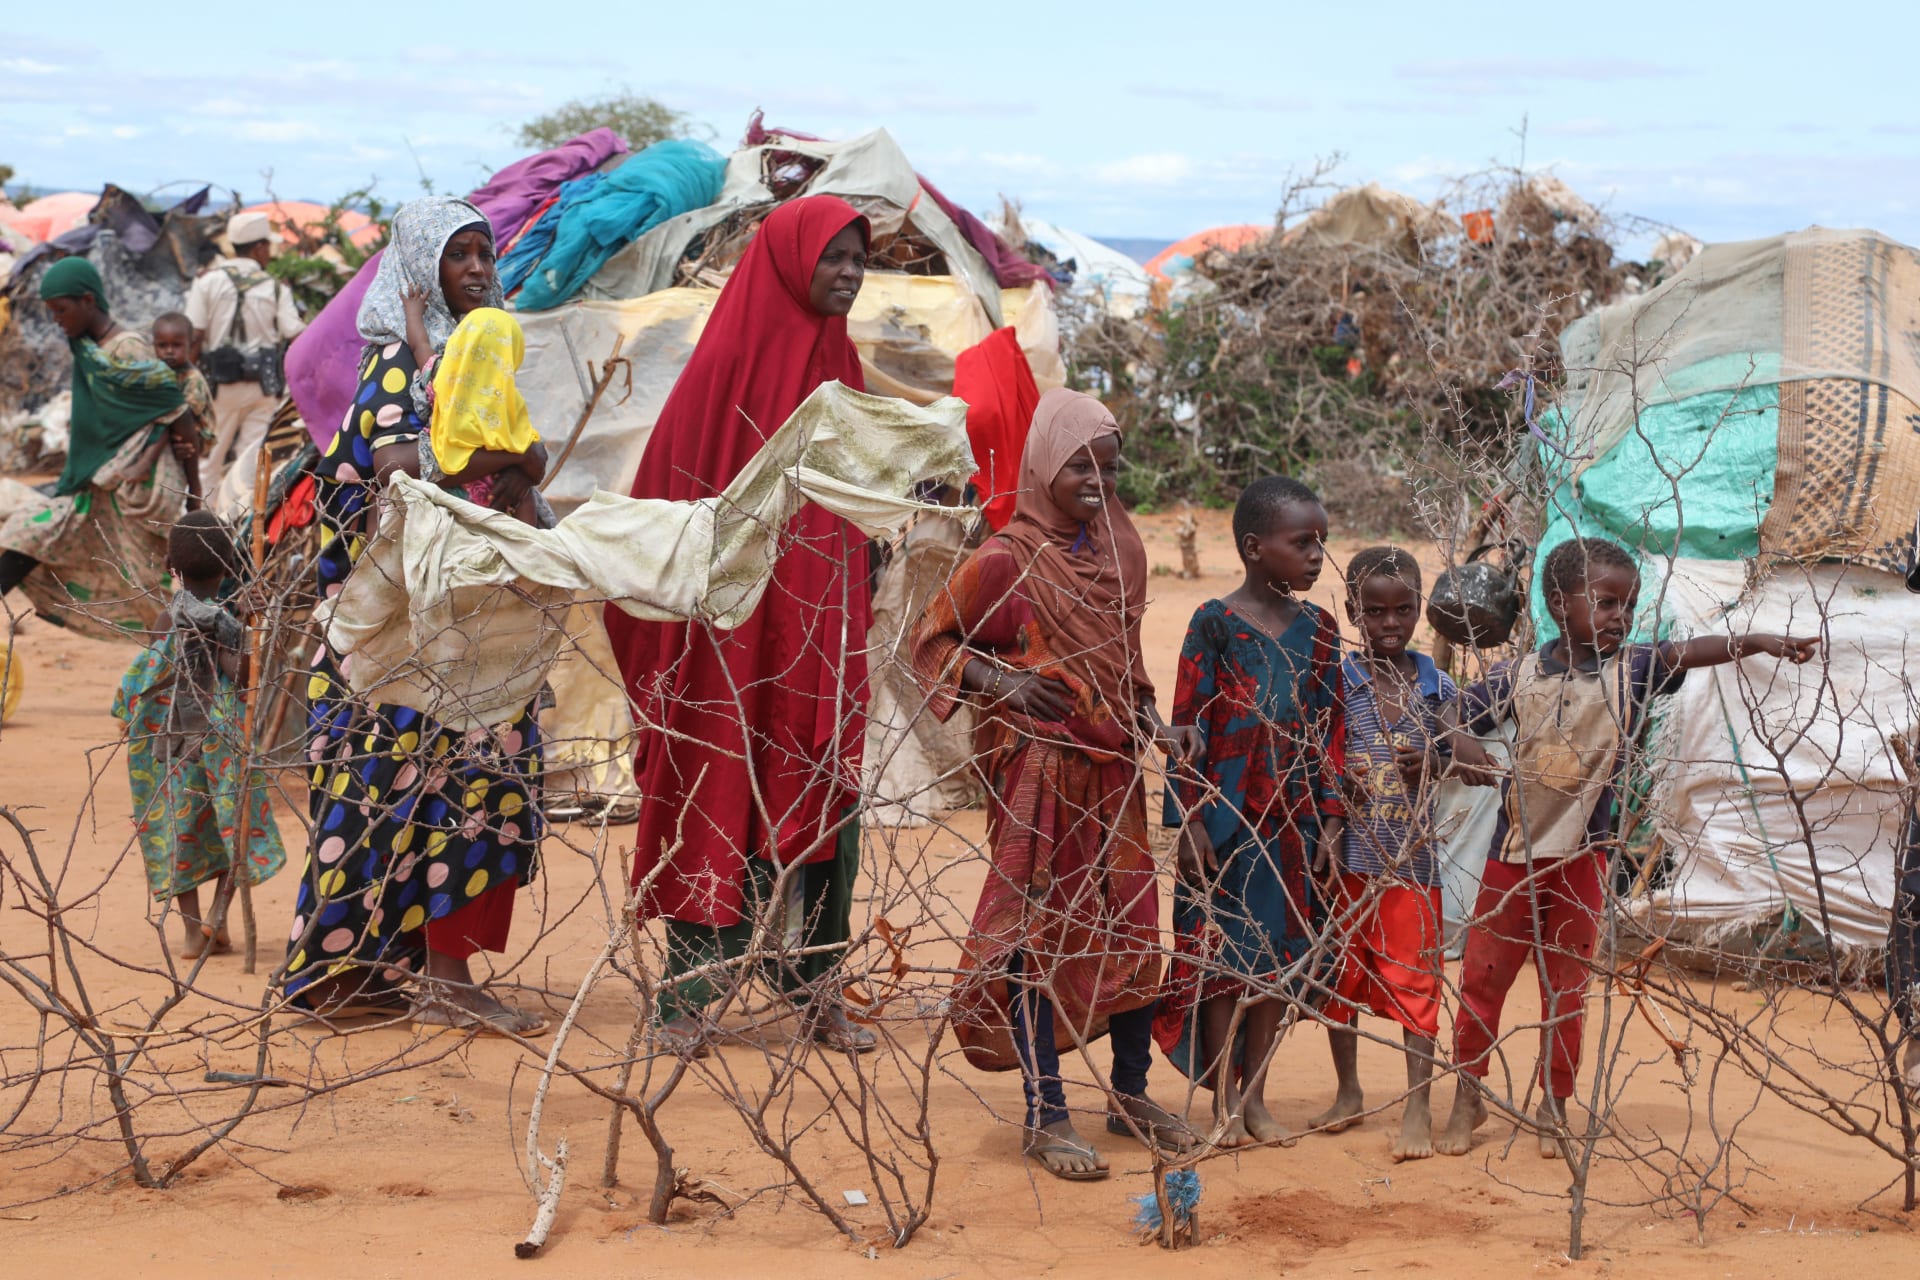   برنامج الأغذية العالمي: انعدام الأمن الغذائي في السودان والساحل وهاييتي أصبح "أعلى مستوى" من القلق